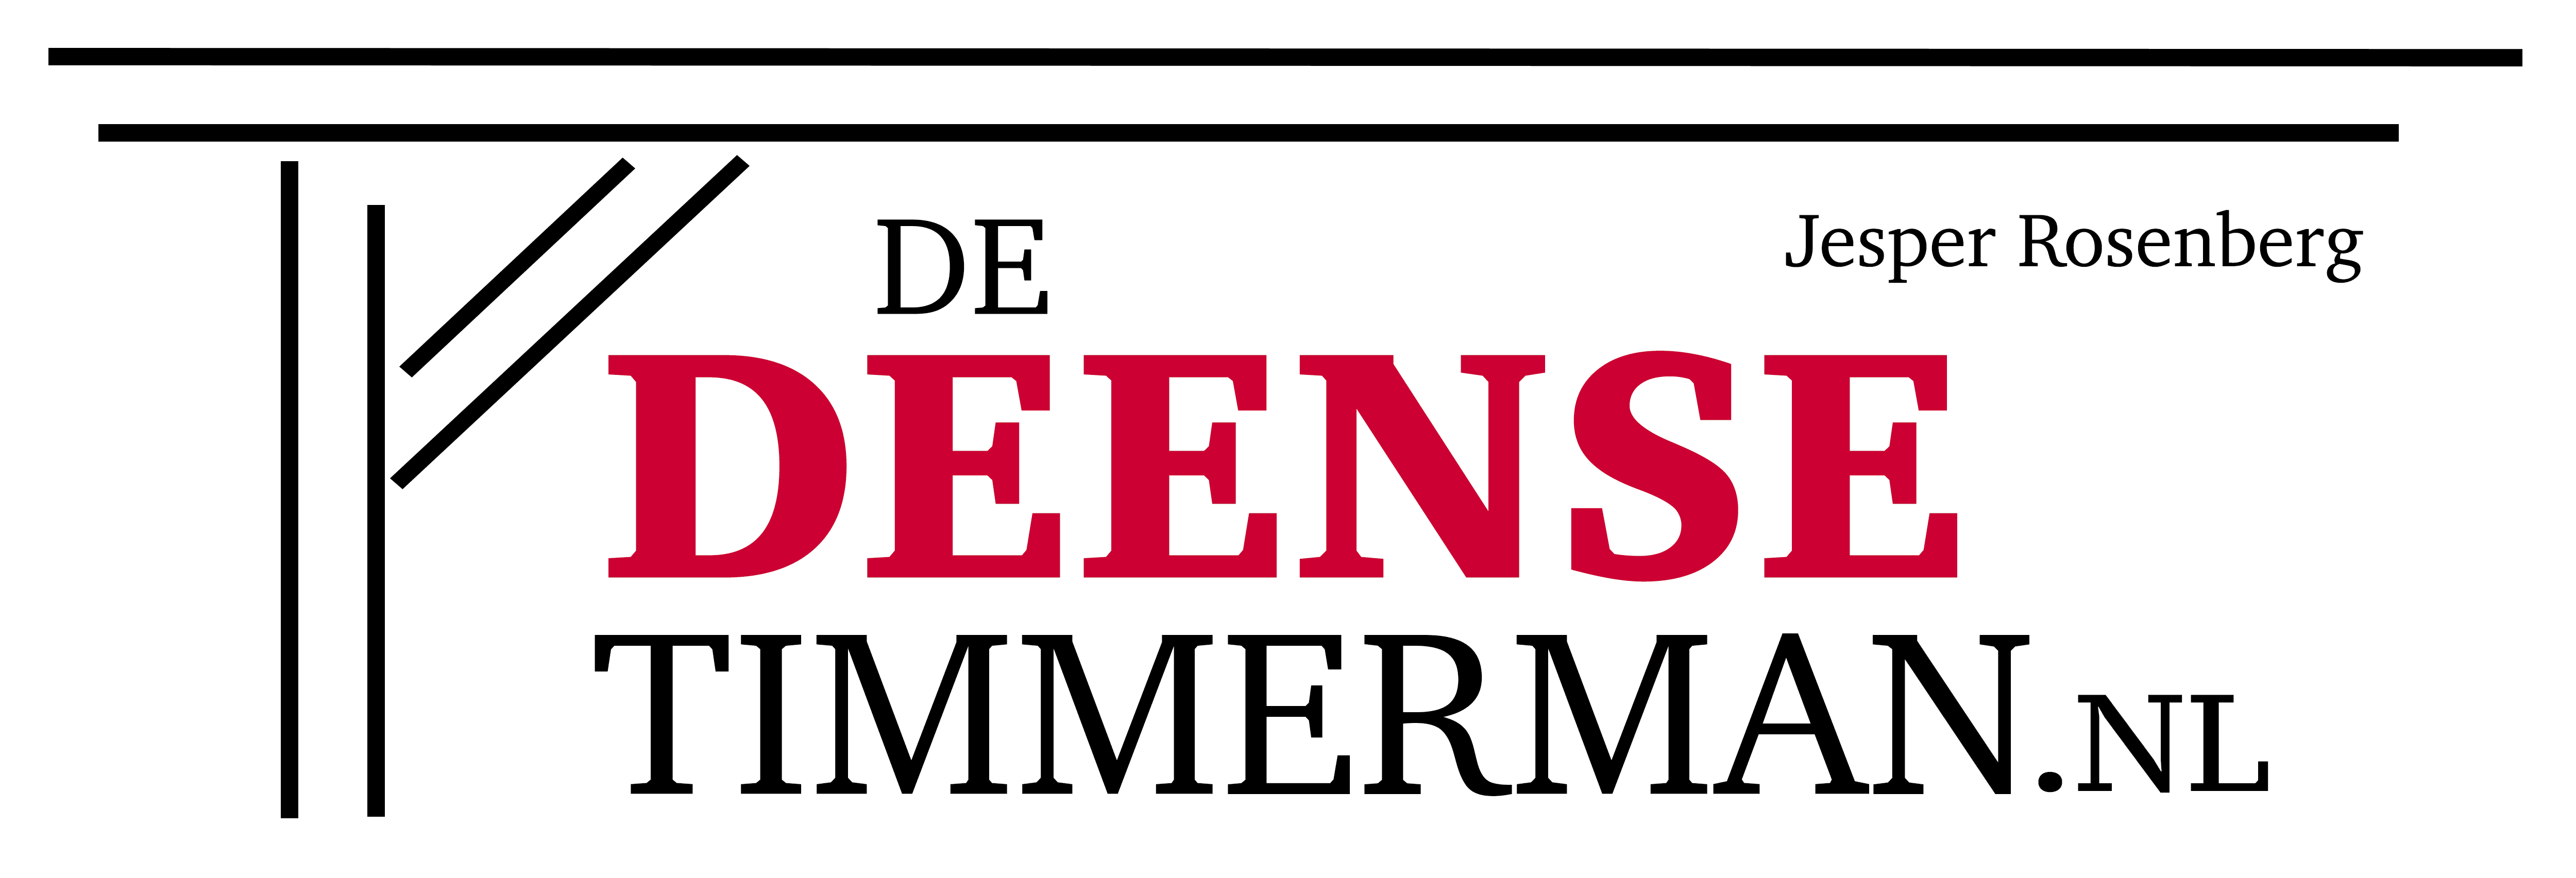 De Deense Timmerman Jesper Rosenberg Nijmegen